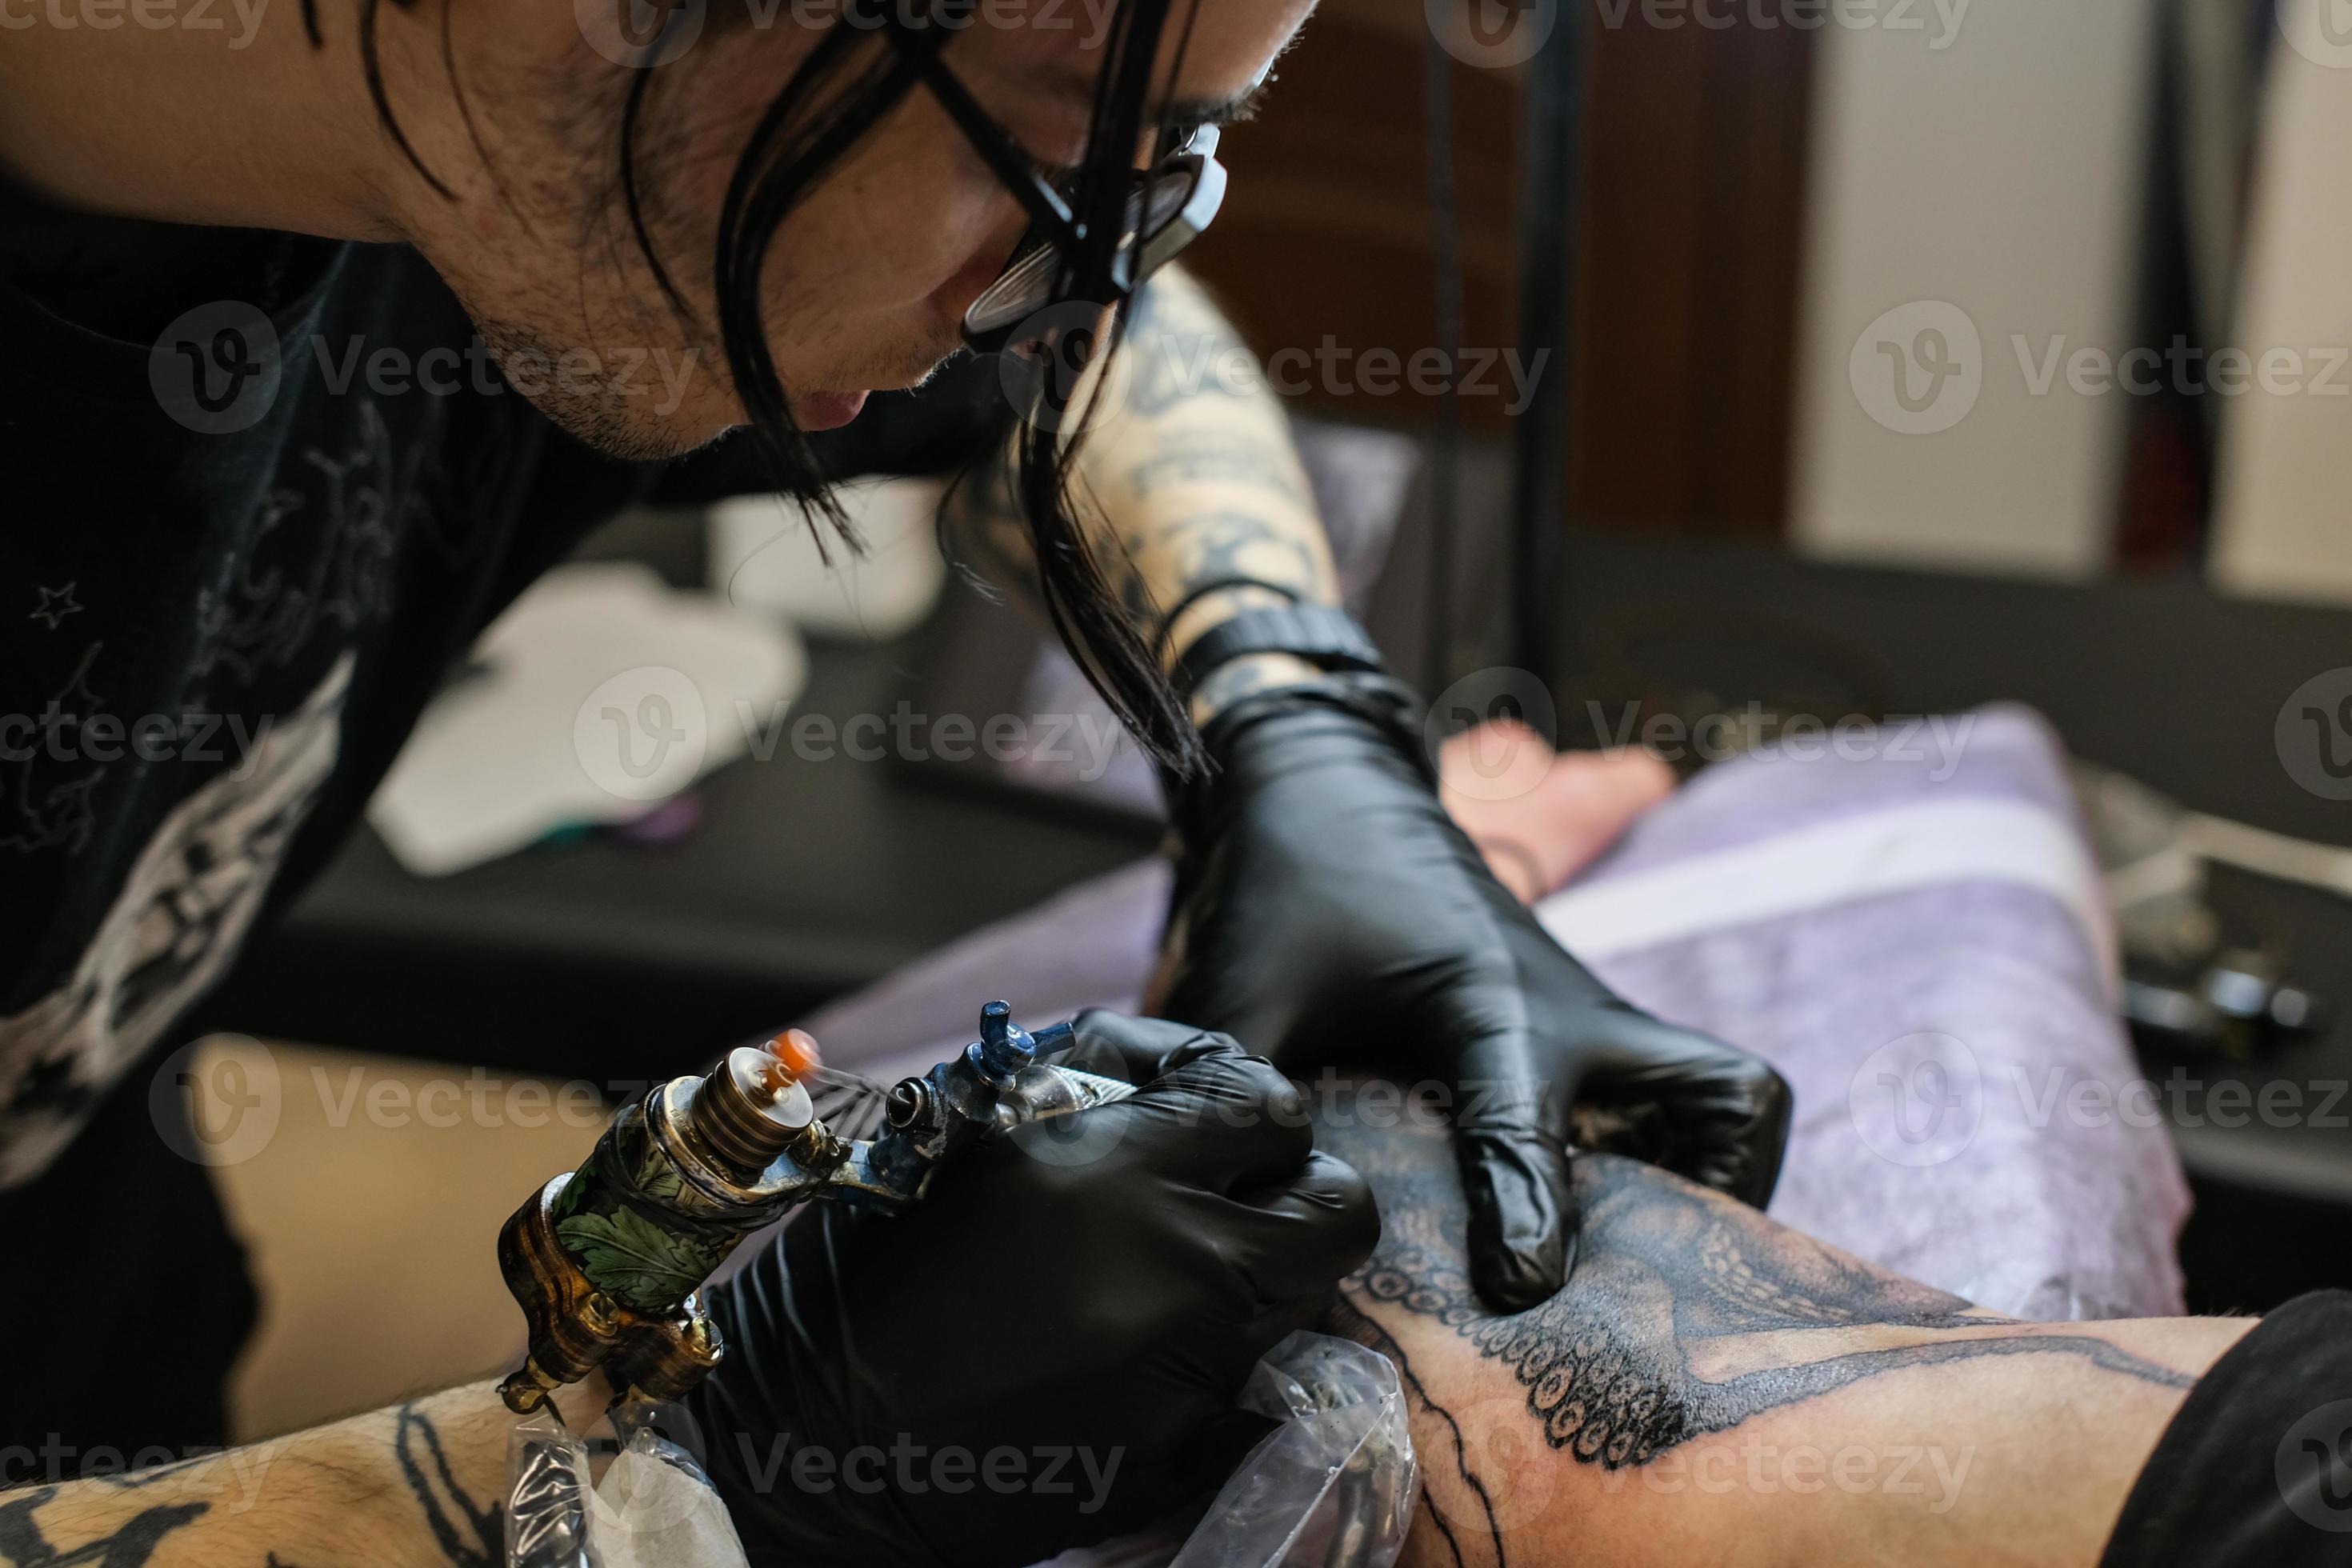 Foto De Close Up De Mão Com Tatuagens · Foto profissional gratuita